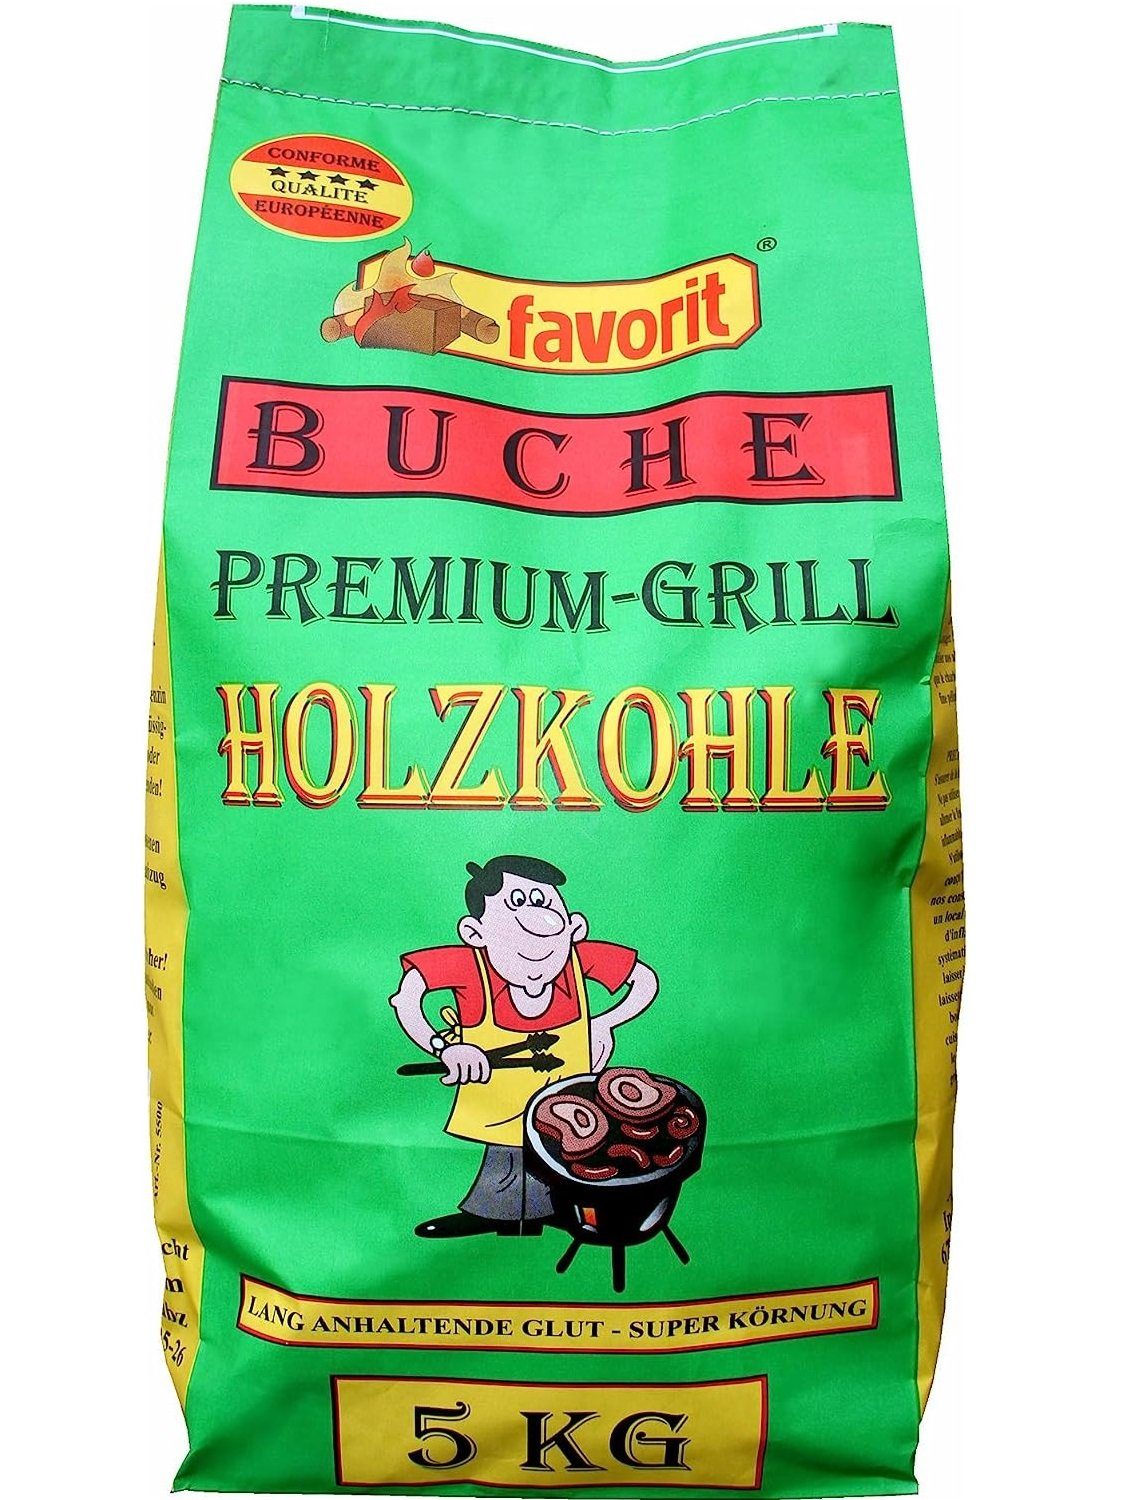 Grillkohle favorit Premium aus Holzkohle kg 5 Qualitiät Buchen Buchenholz